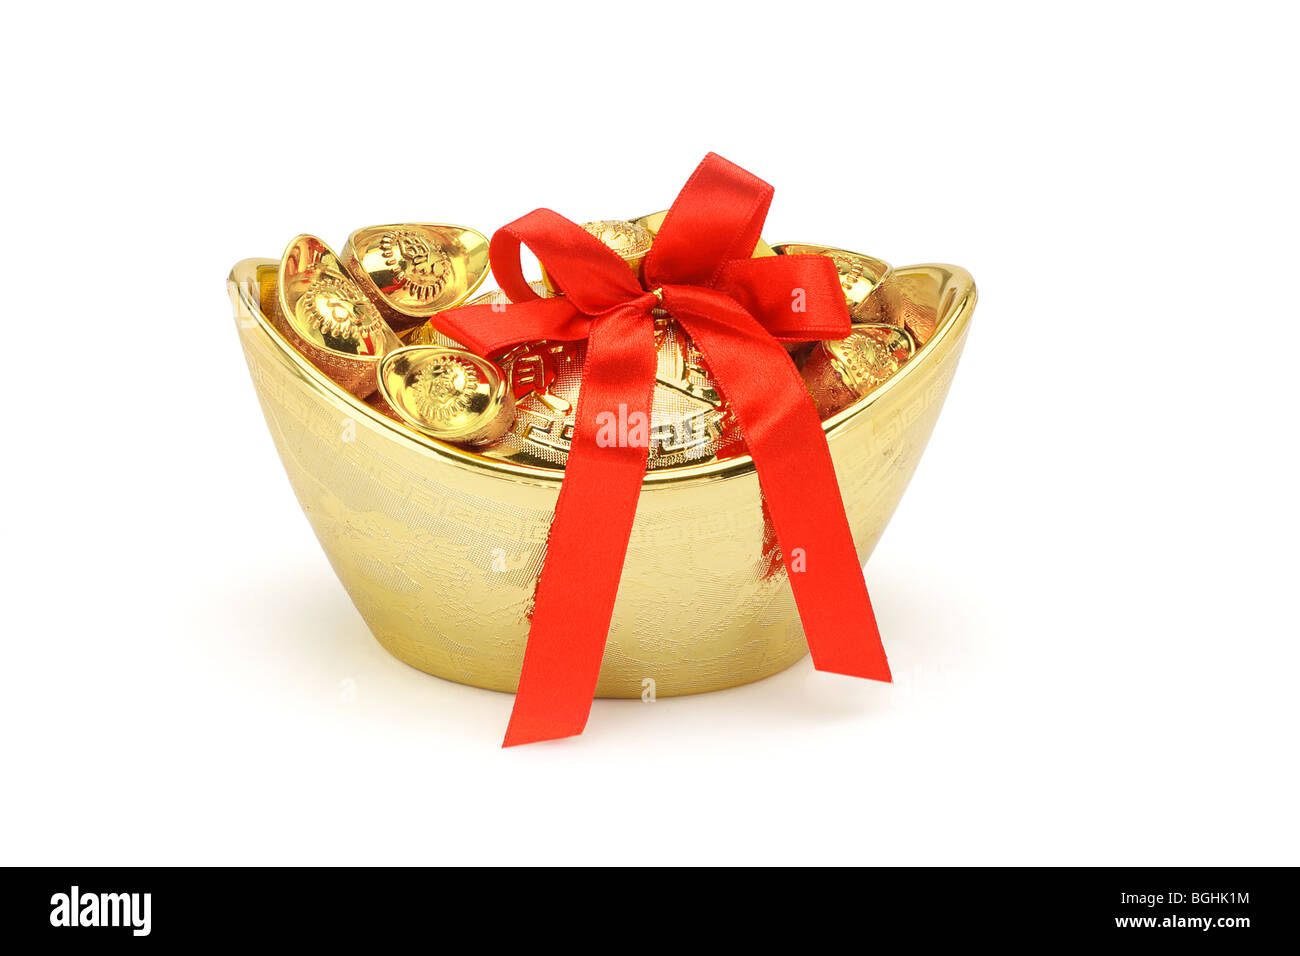 Chinese New Year gold dekorative Barren mit roter Schleife Band auf weißem Hintergrund Stockfoto